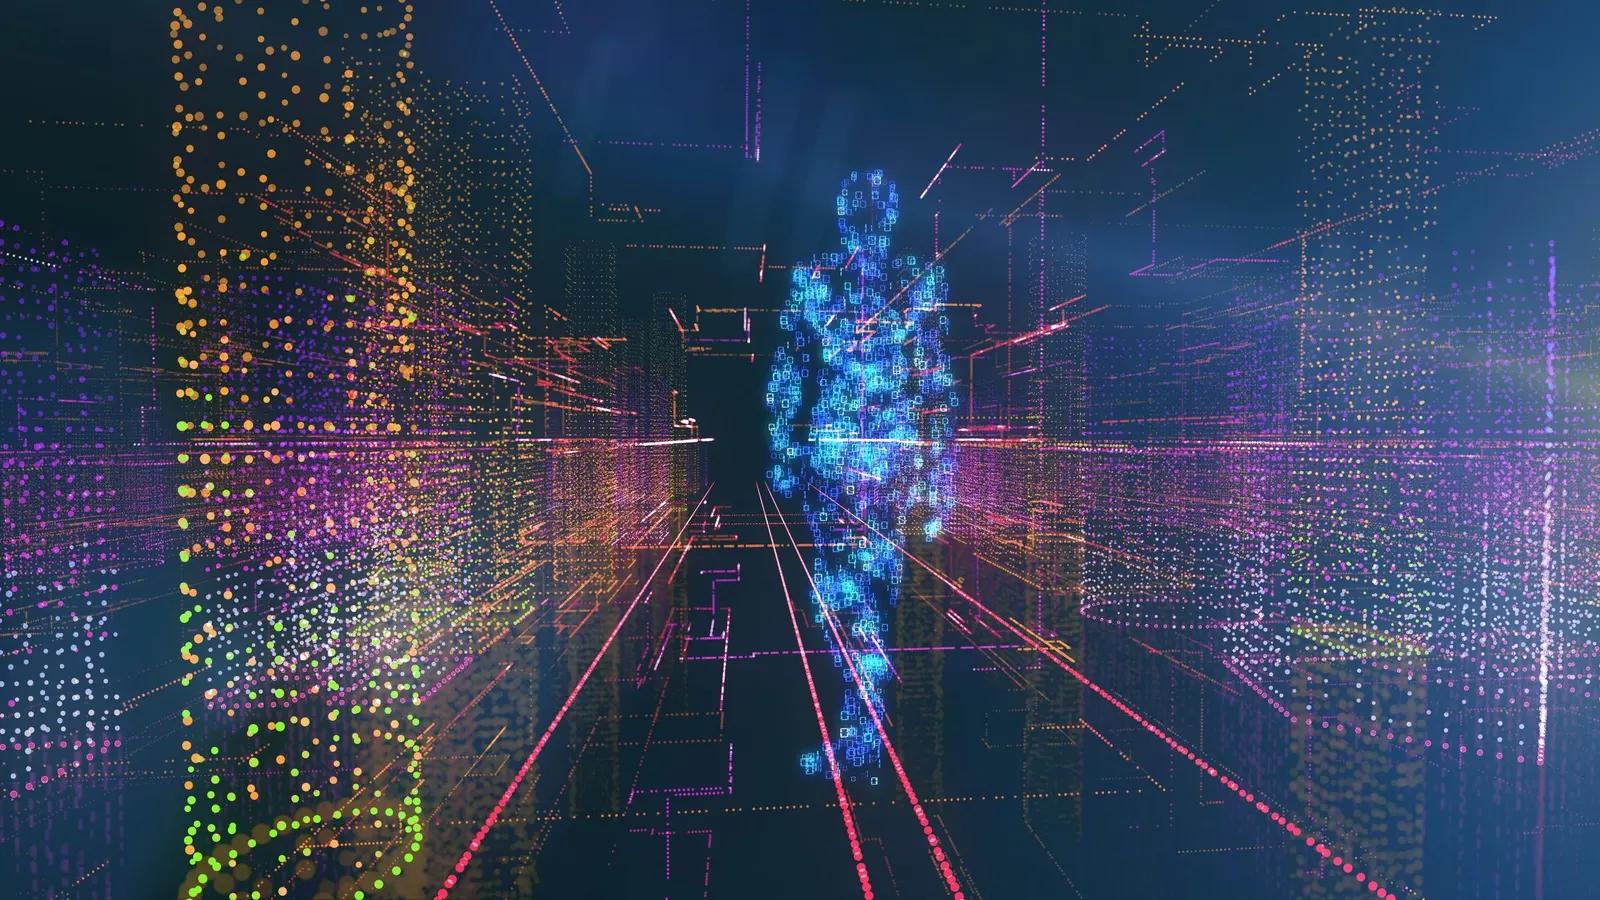 inteligencia artificial quantica - Cuál es el futuro de la IA cuántica